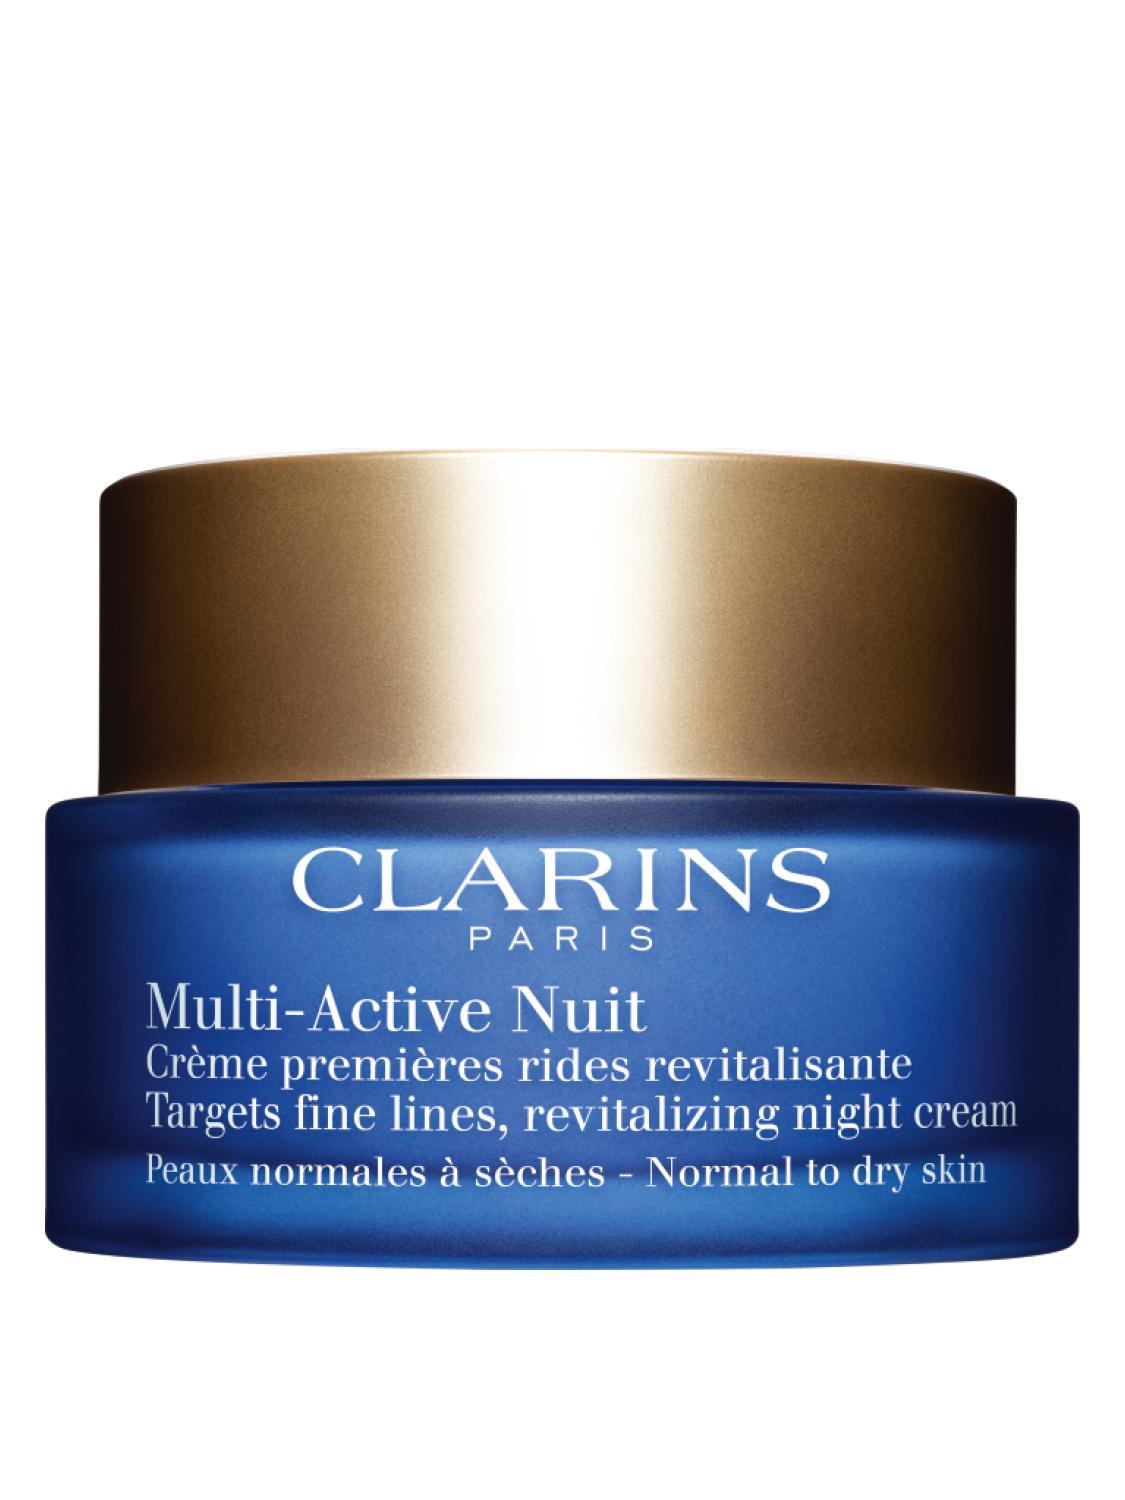 Clarins Multi-Active Nuit Нощен възстановяващ крем за фини сухи линии за нормална към суха кожа без опаковка